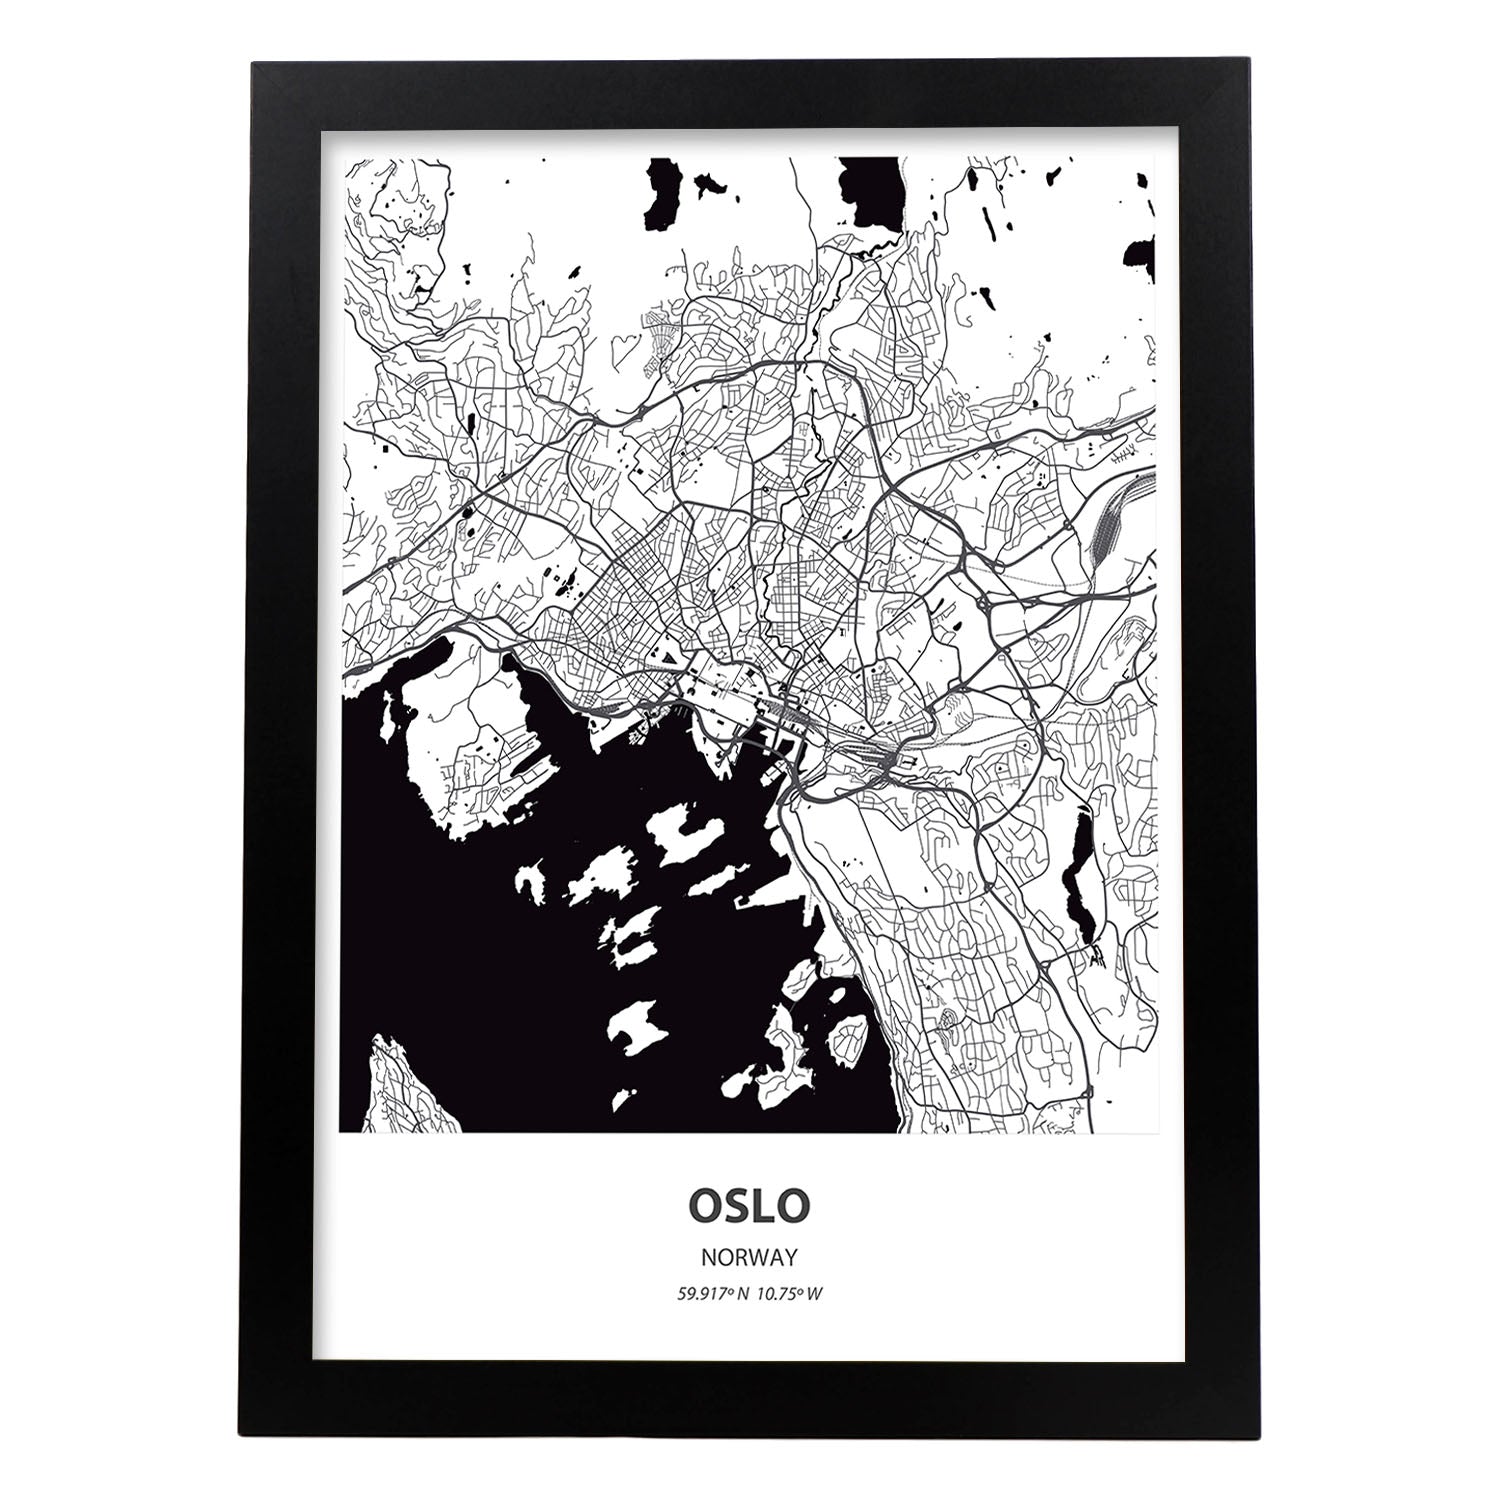 Poster con mapa de Oslo - Noruega. Láminas de ciudades del norte de Europa con mares y ríos en color negro.-Artwork-Nacnic-A3-Marco Negro-Nacnic Estudio SL